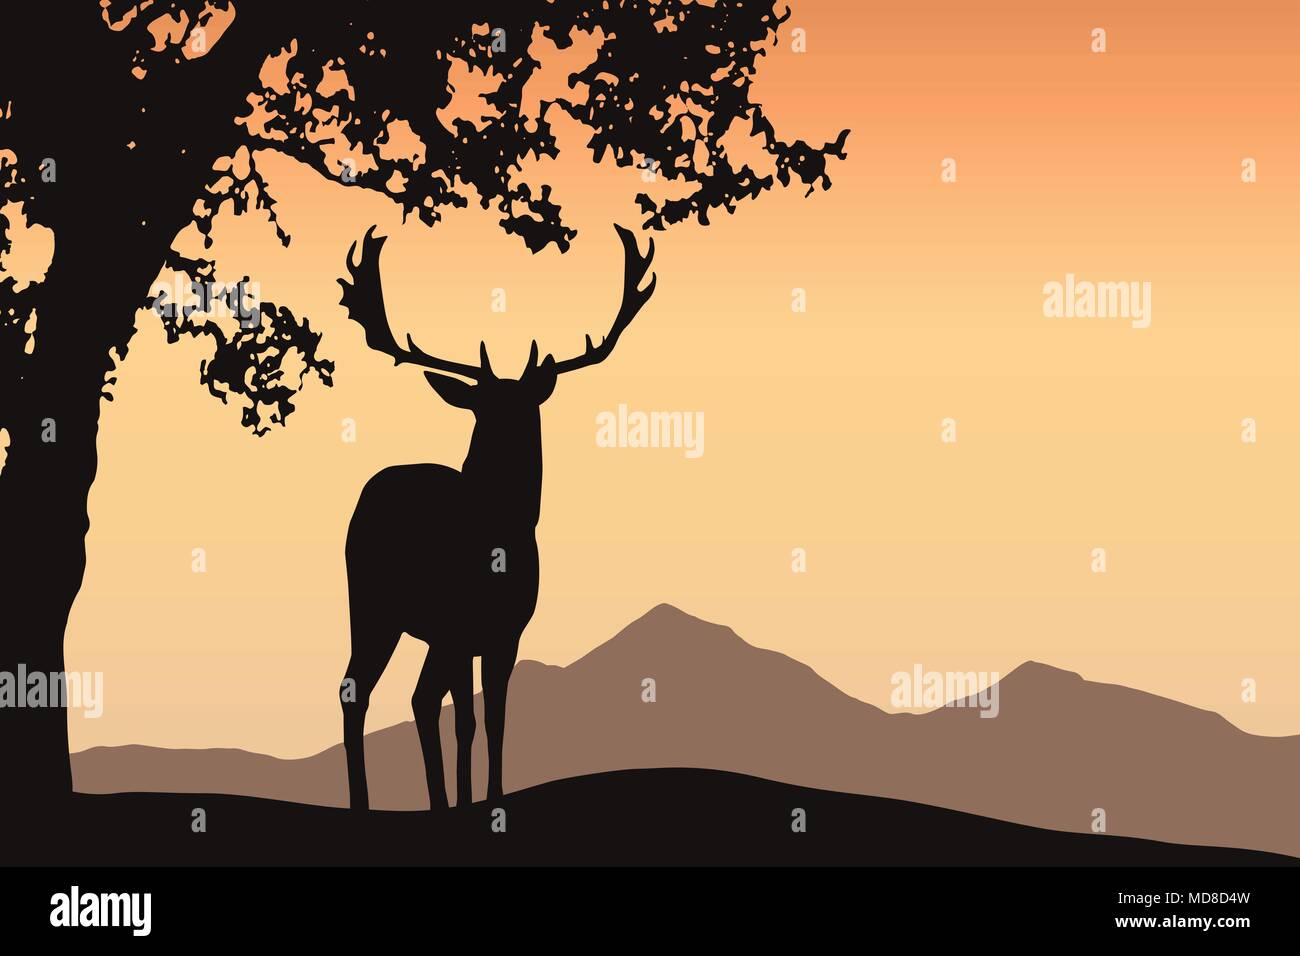 Cervo con corna in piedi sotto un albero a foglie decidue in un paesaggio di montagna sotto un cielo arancione - vettore con lo spazio per il tuo testo Illustrazione Vettoriale